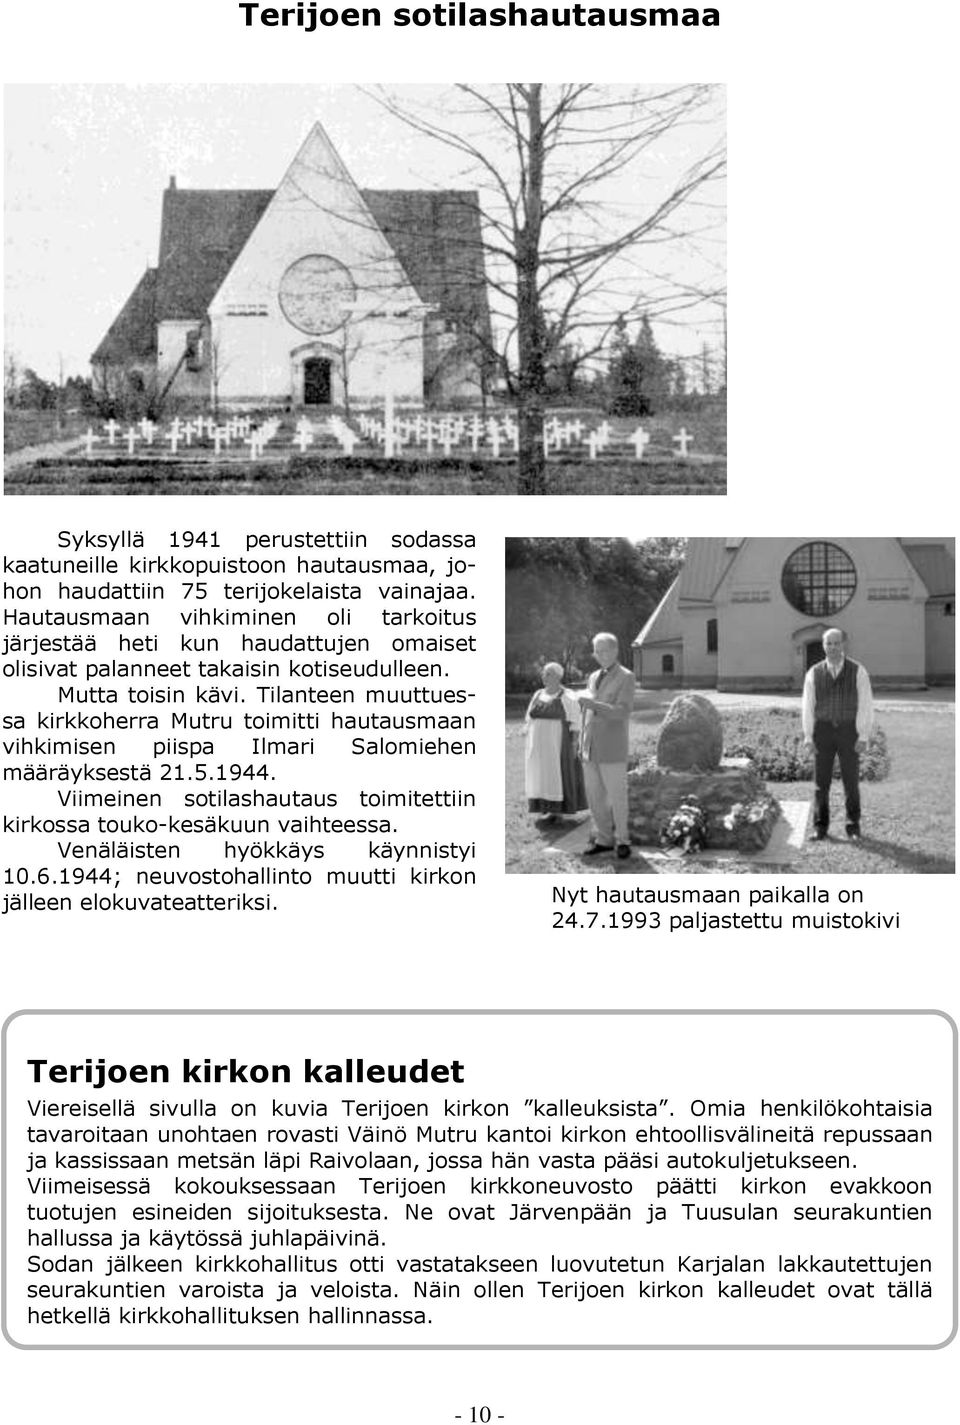 Tilanteen muuttuessa kirkkoherra Mutru toimitti hautausmaan vihkimisen piispa Ilmari Salomiehen määräyksestä 21.5.1944. Viimeinen sotilashautaus toimitettiin kirkossa touko-kesäkuun vaihteessa.